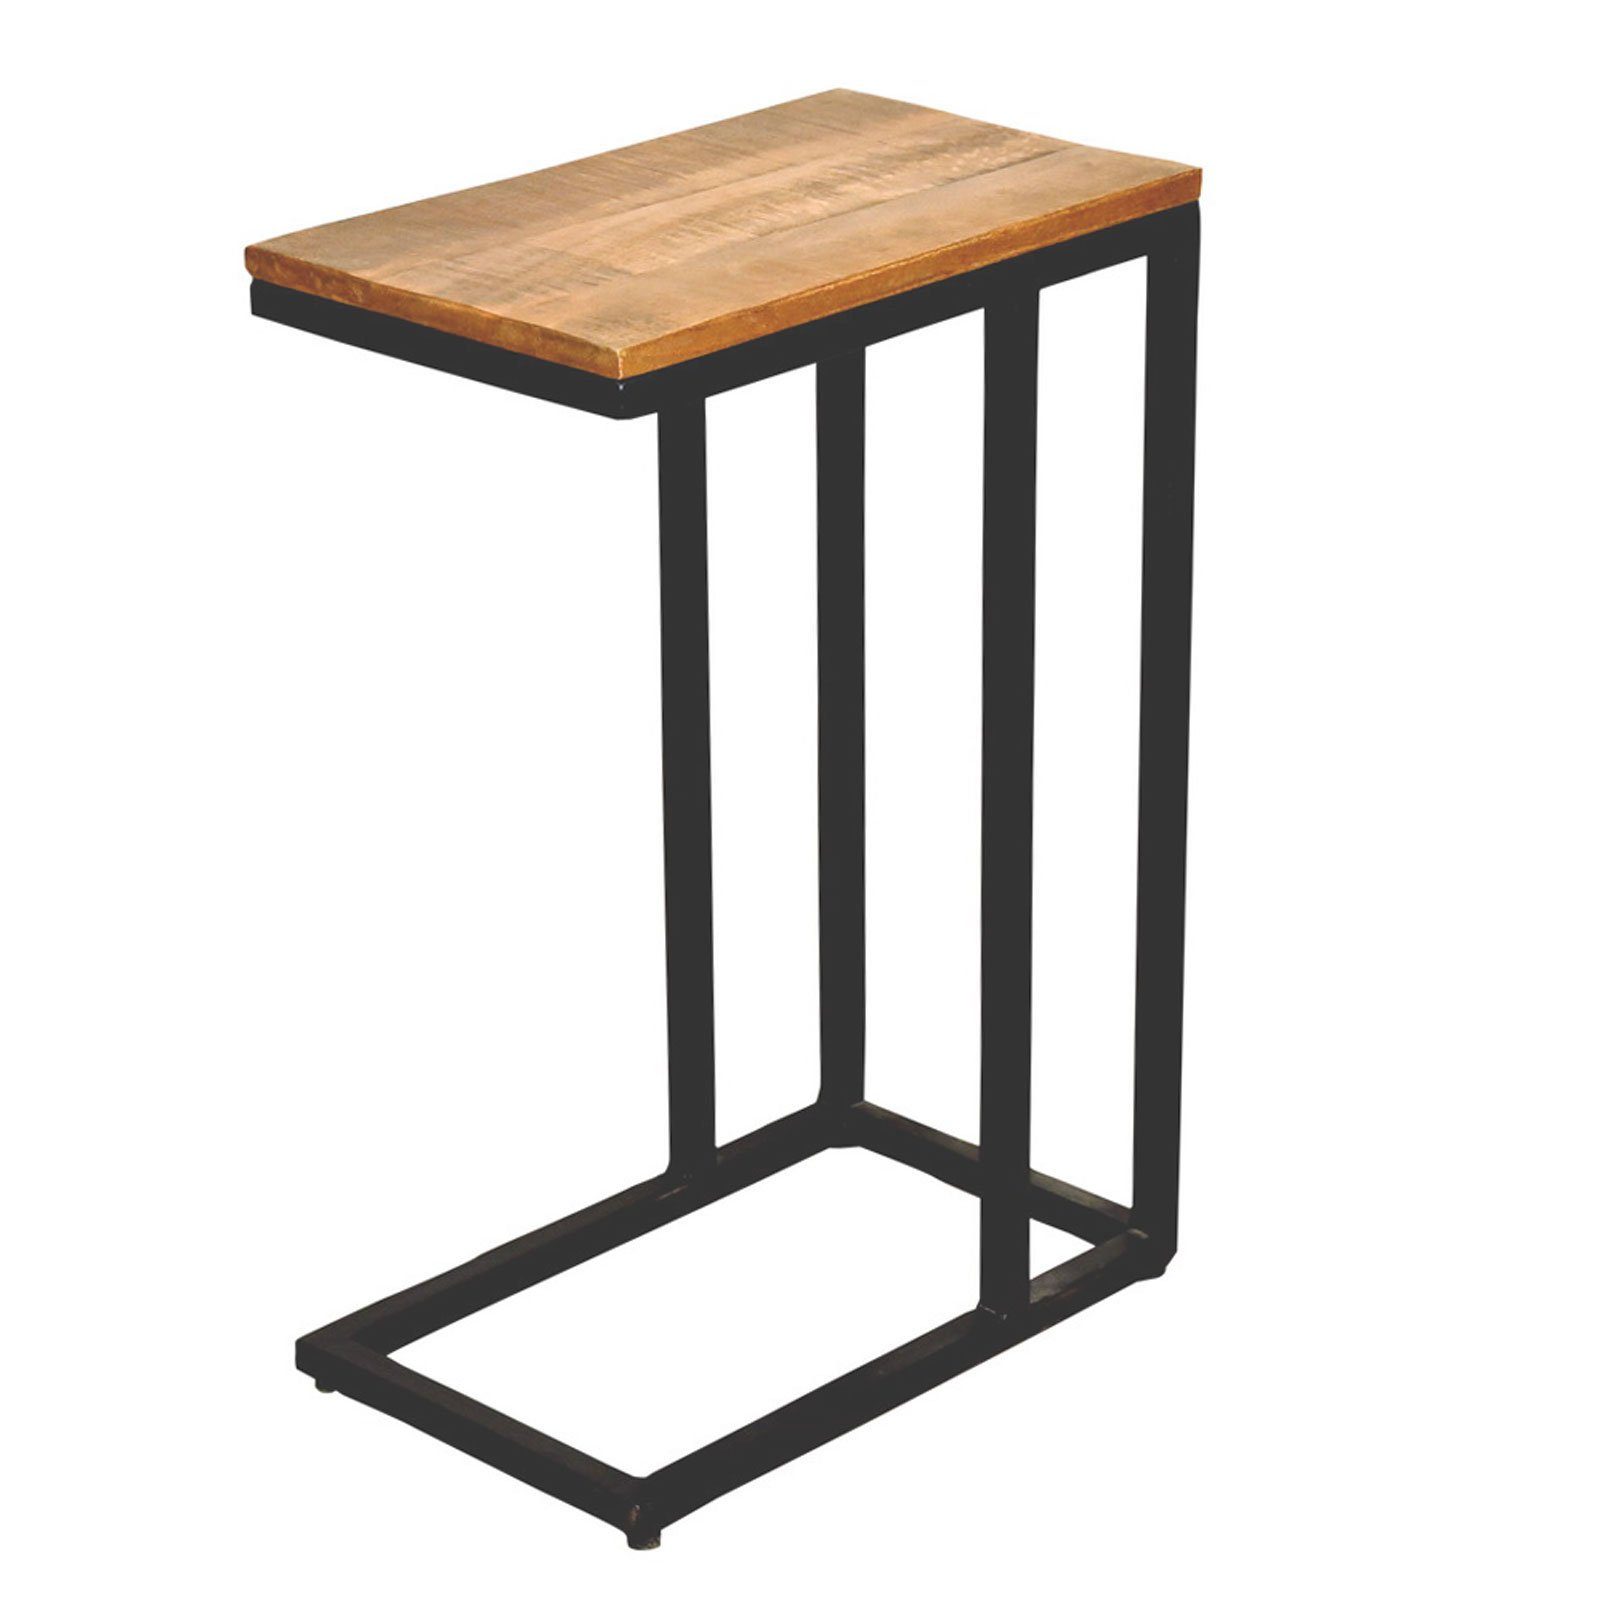 Holz schwarz Liverpool matt C-Tisch Metall Laptoptisch Sofatisch Minara Couchtisch Beistelltisch